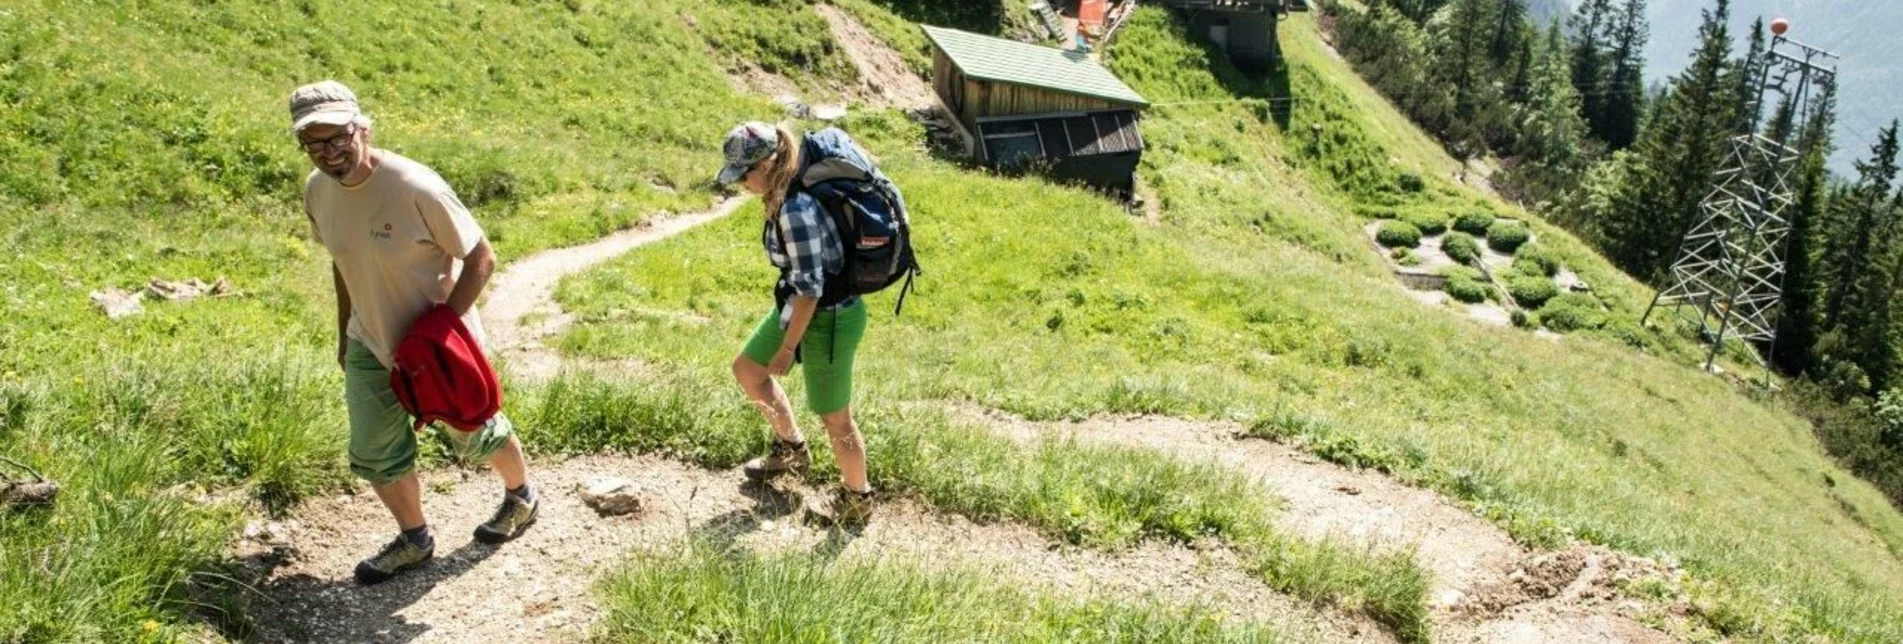 Hiking route From hut to hut in the National park Gesäuse Stage 05A Haindlkarhütte - Weidendom - Touren-Impression #1 | © TV Gesäuse